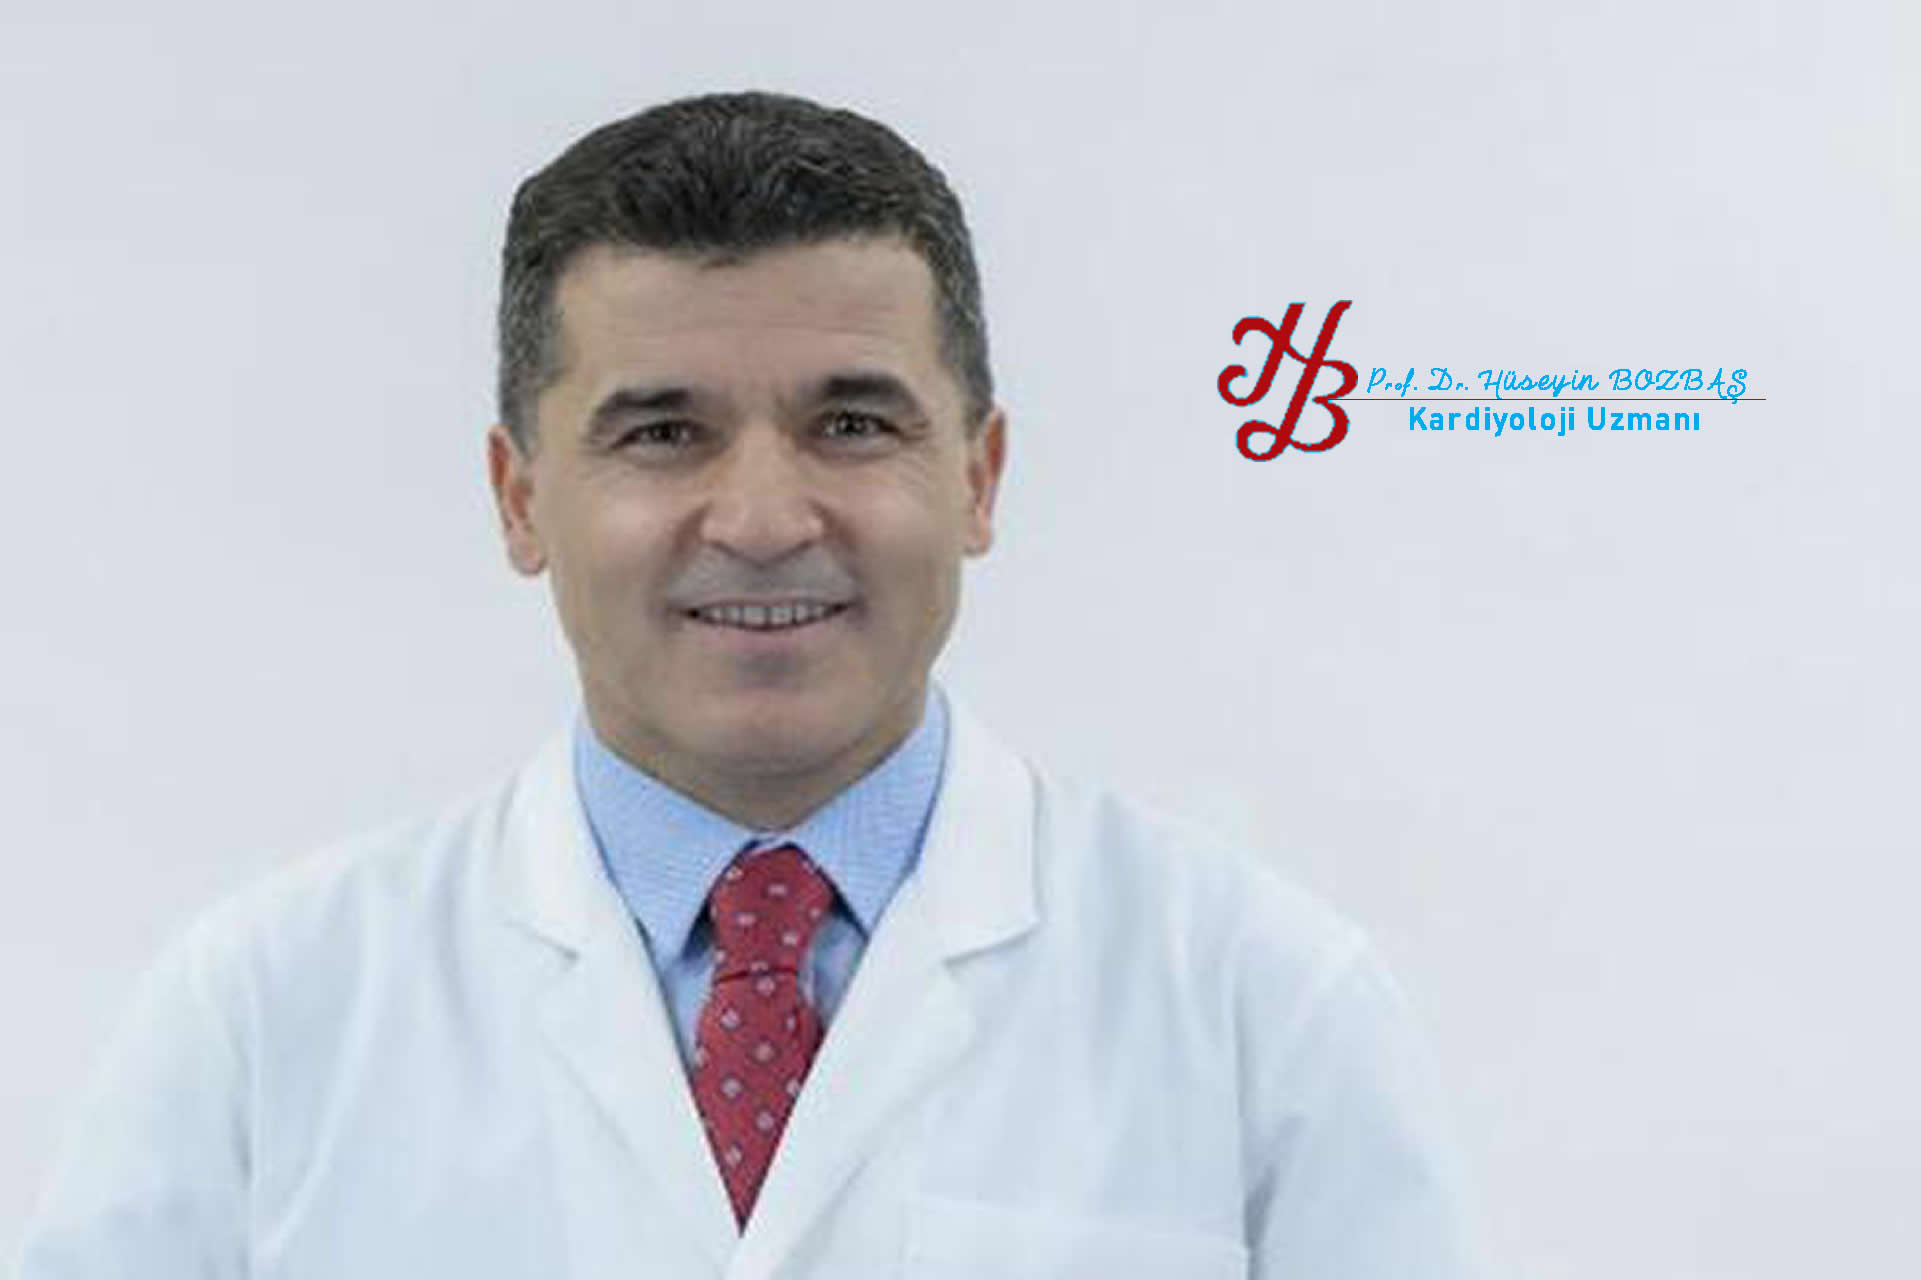 Prof Dr Hüseyin Bozbaş